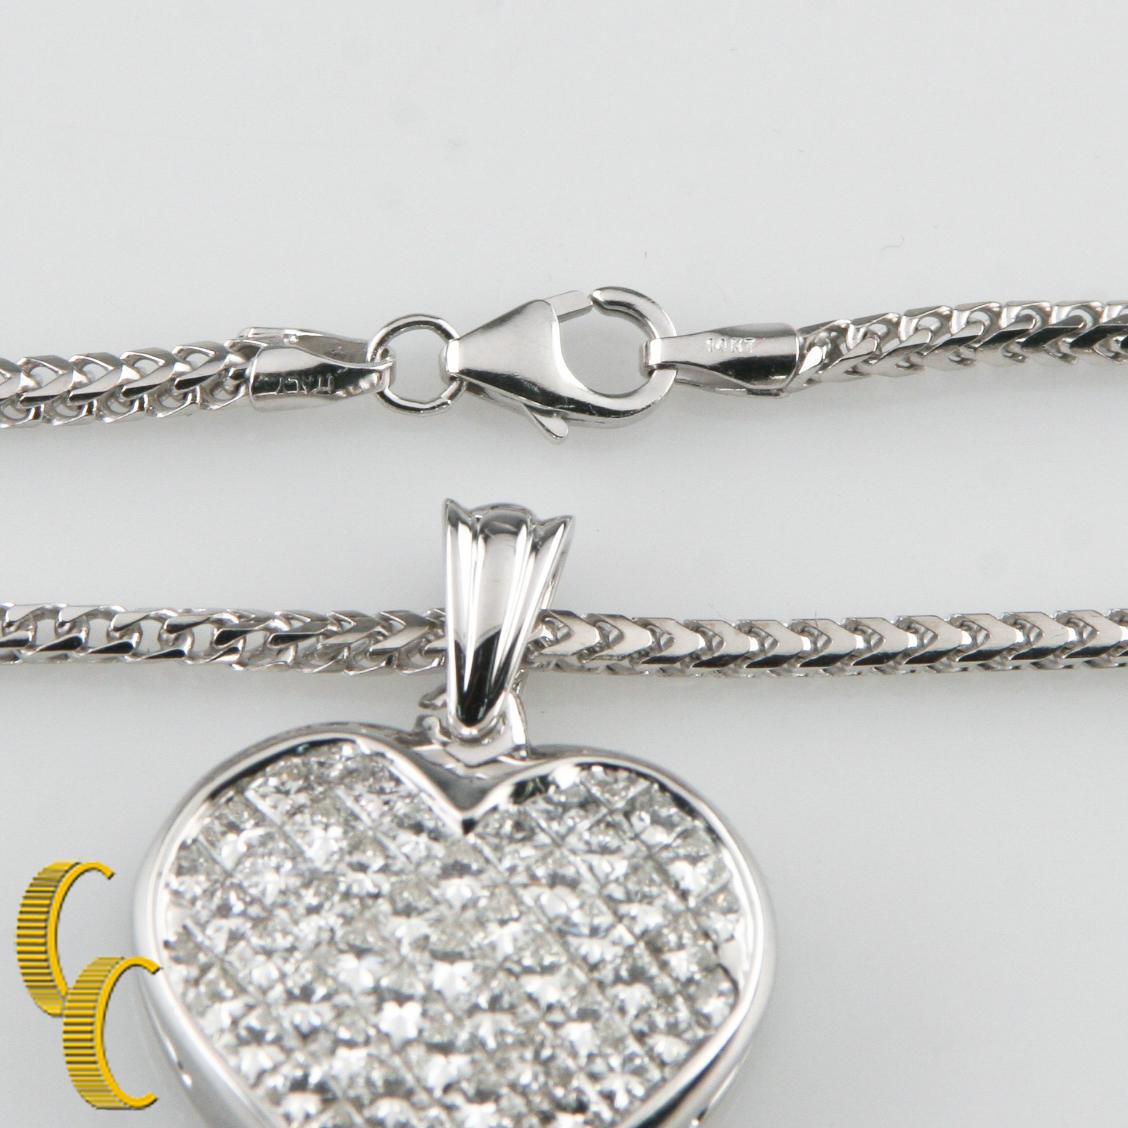 Princess Cut 6.00 Carat Diamond 18k White Gold Heart Pendant w/ 14k White Gold Franco Chain